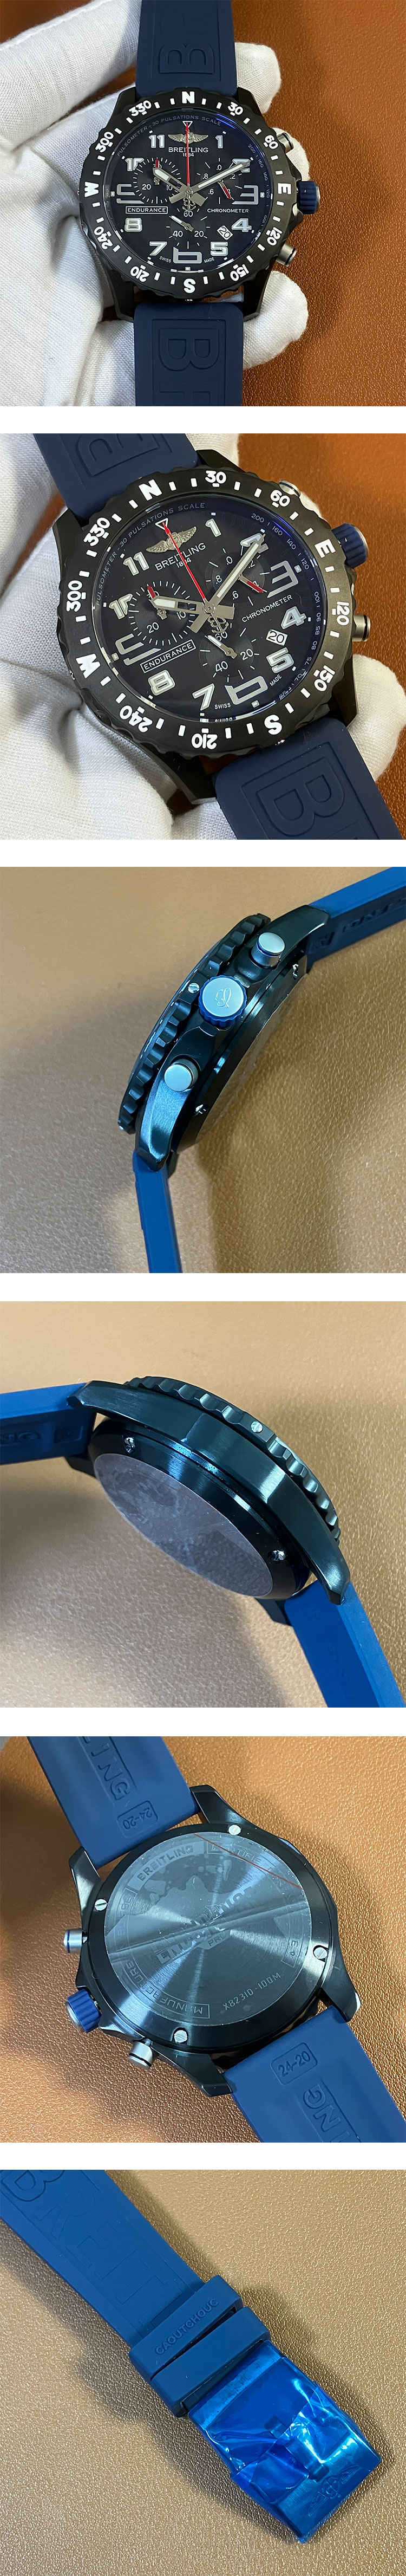 人気クォーツ 腕時計 エンデュランスプロ X82310D51B1S1 ブラック ブルー ブライトライト